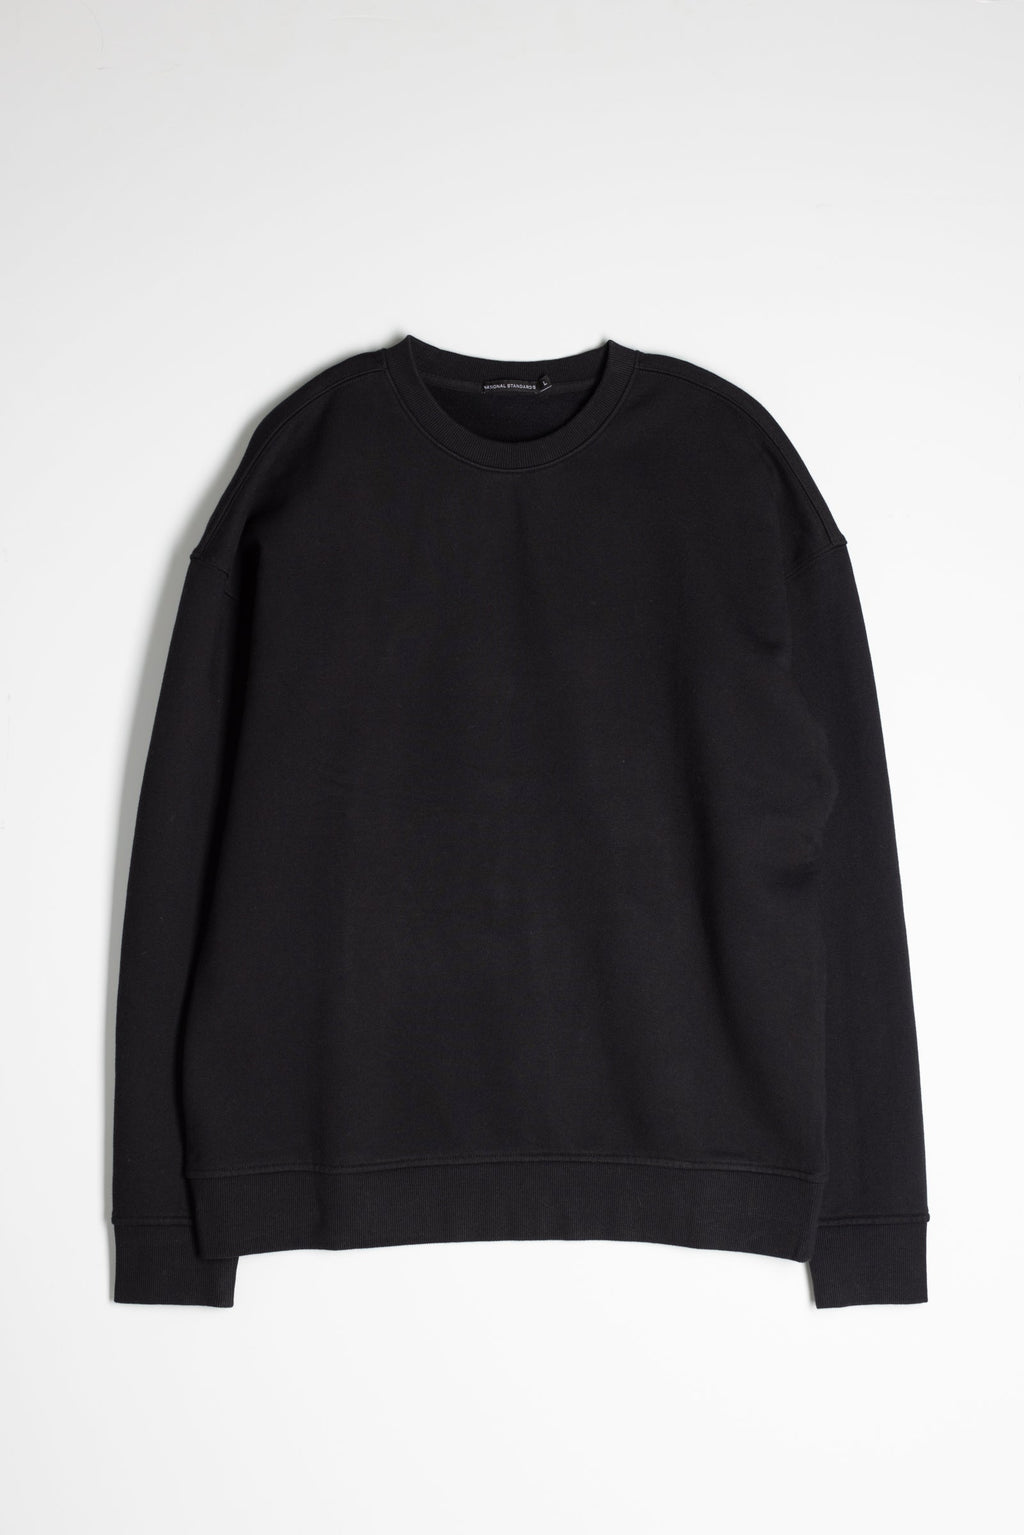 Cotton Fleece Sweatshirt in Black 01